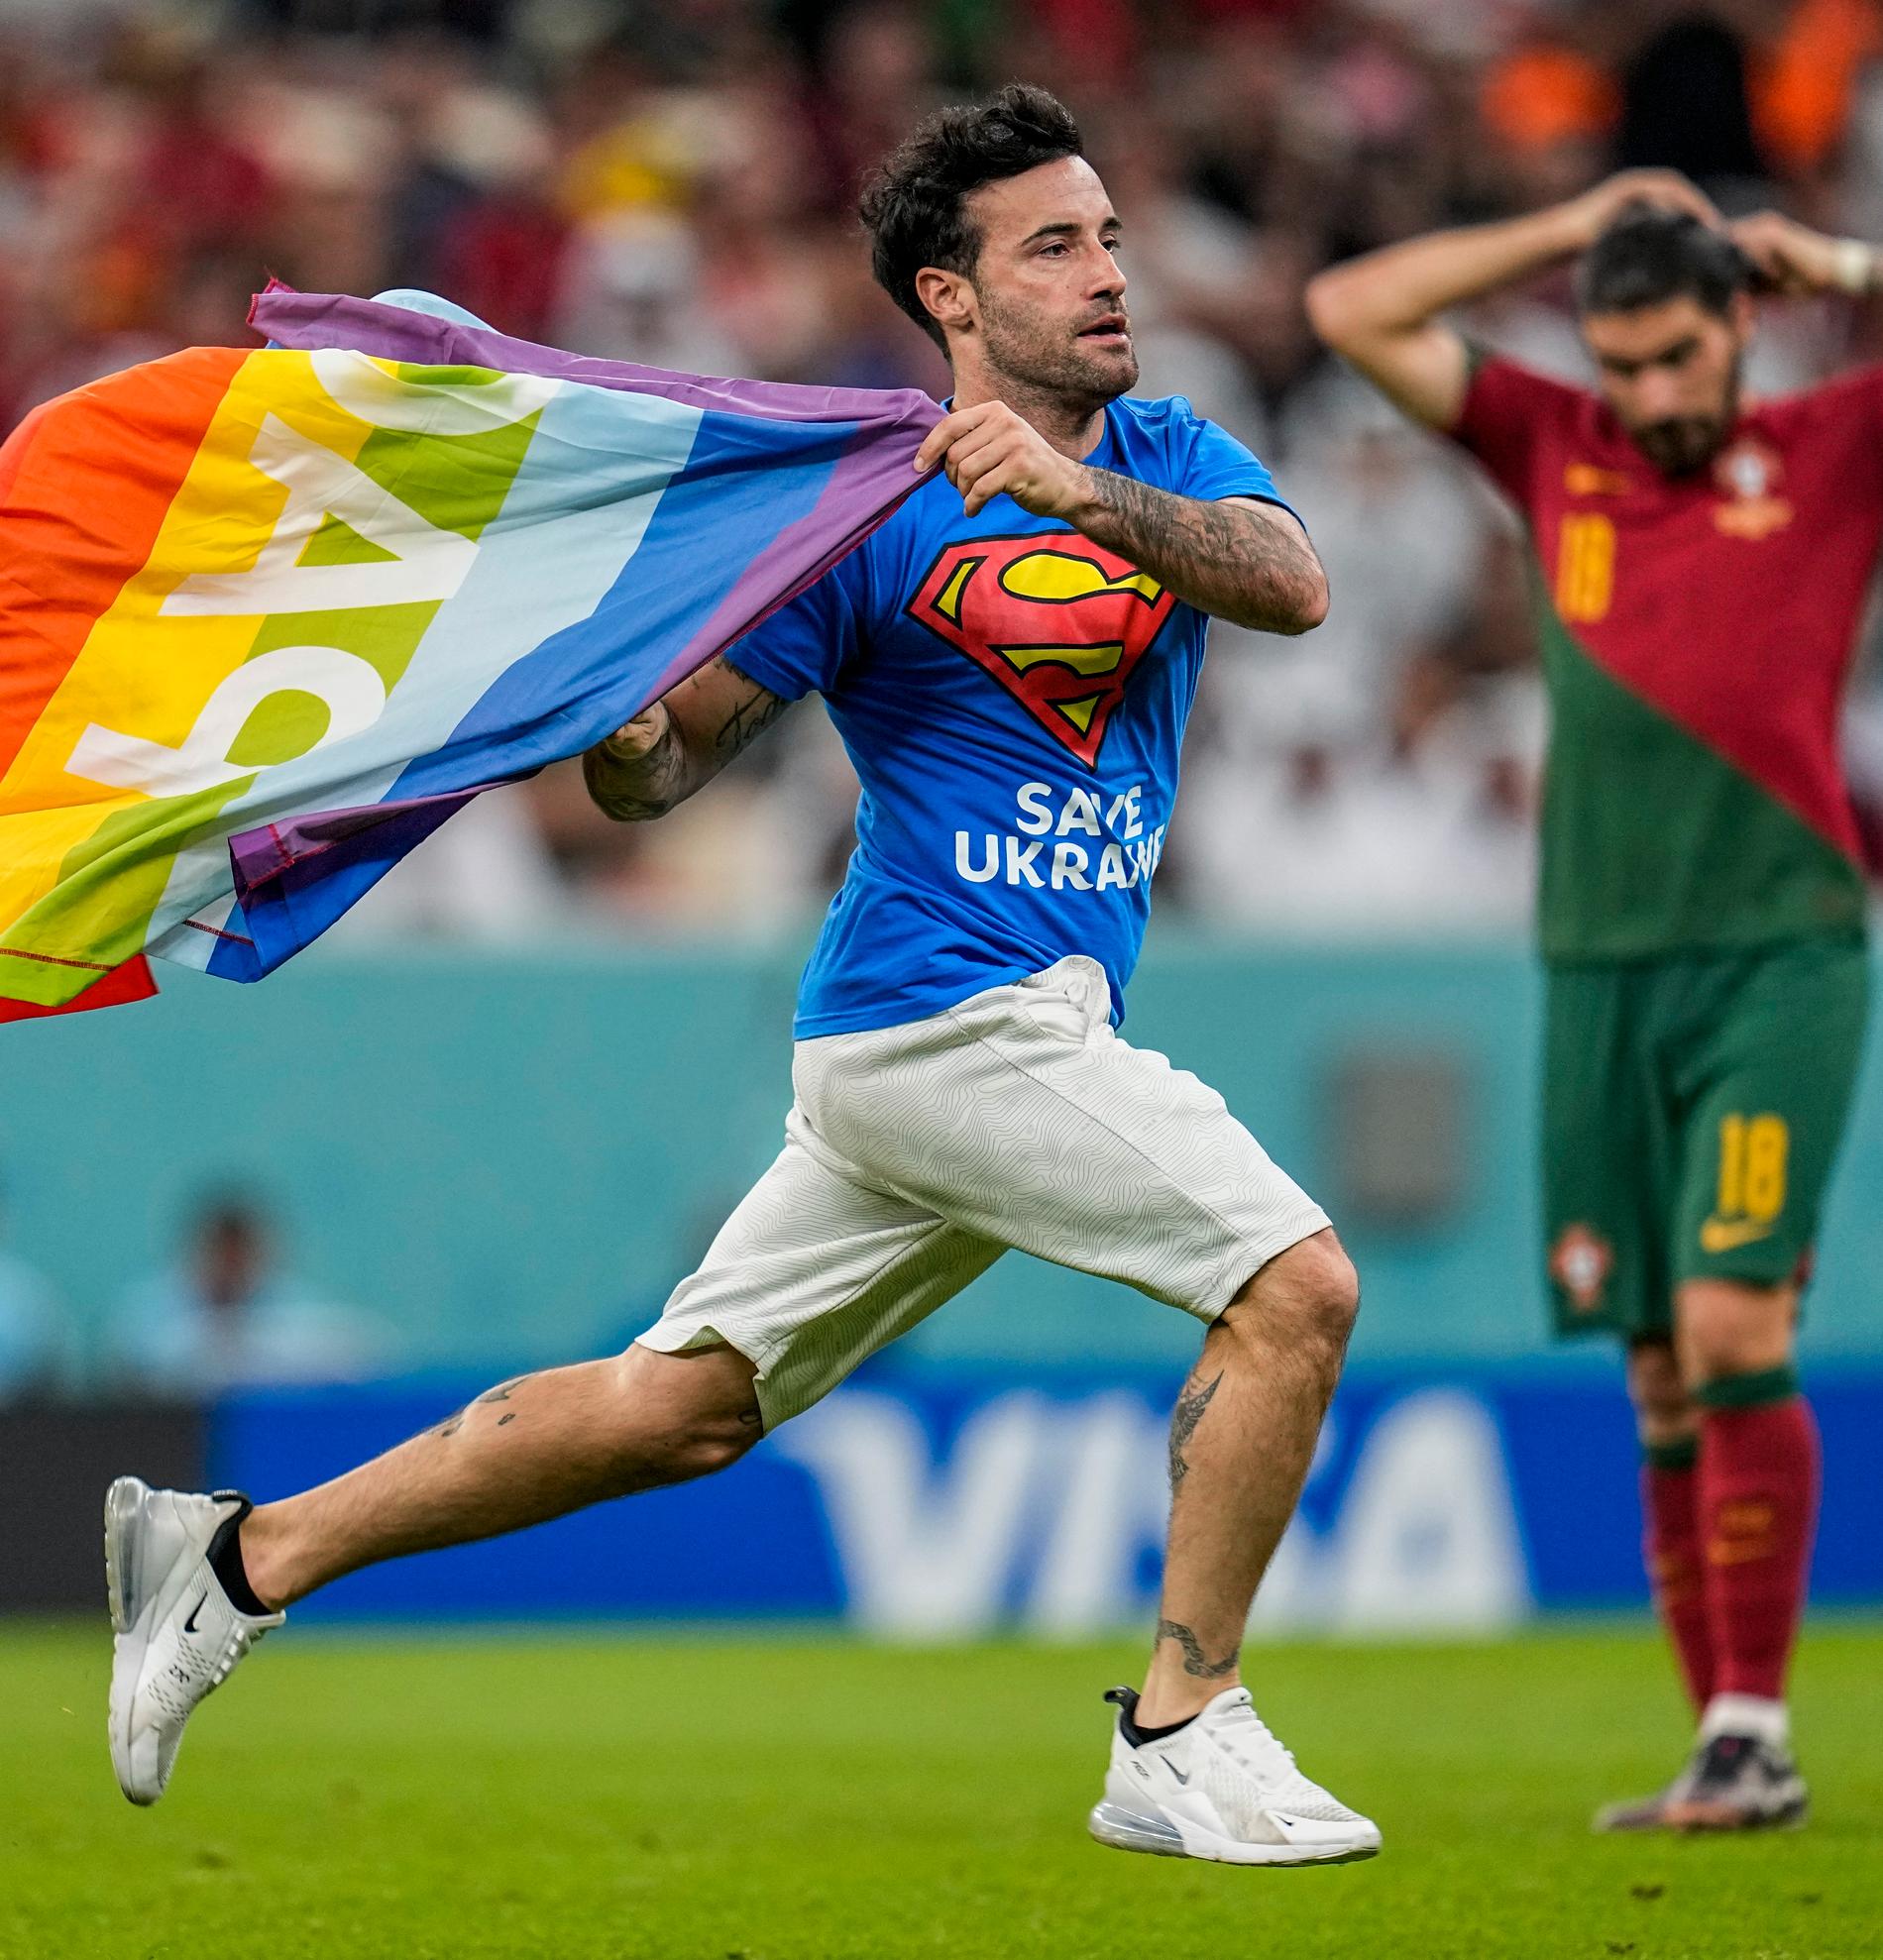 Abbiamo visto bandiere arcobaleno e sharia in buona compagnia ai Mondiali del Qatar?